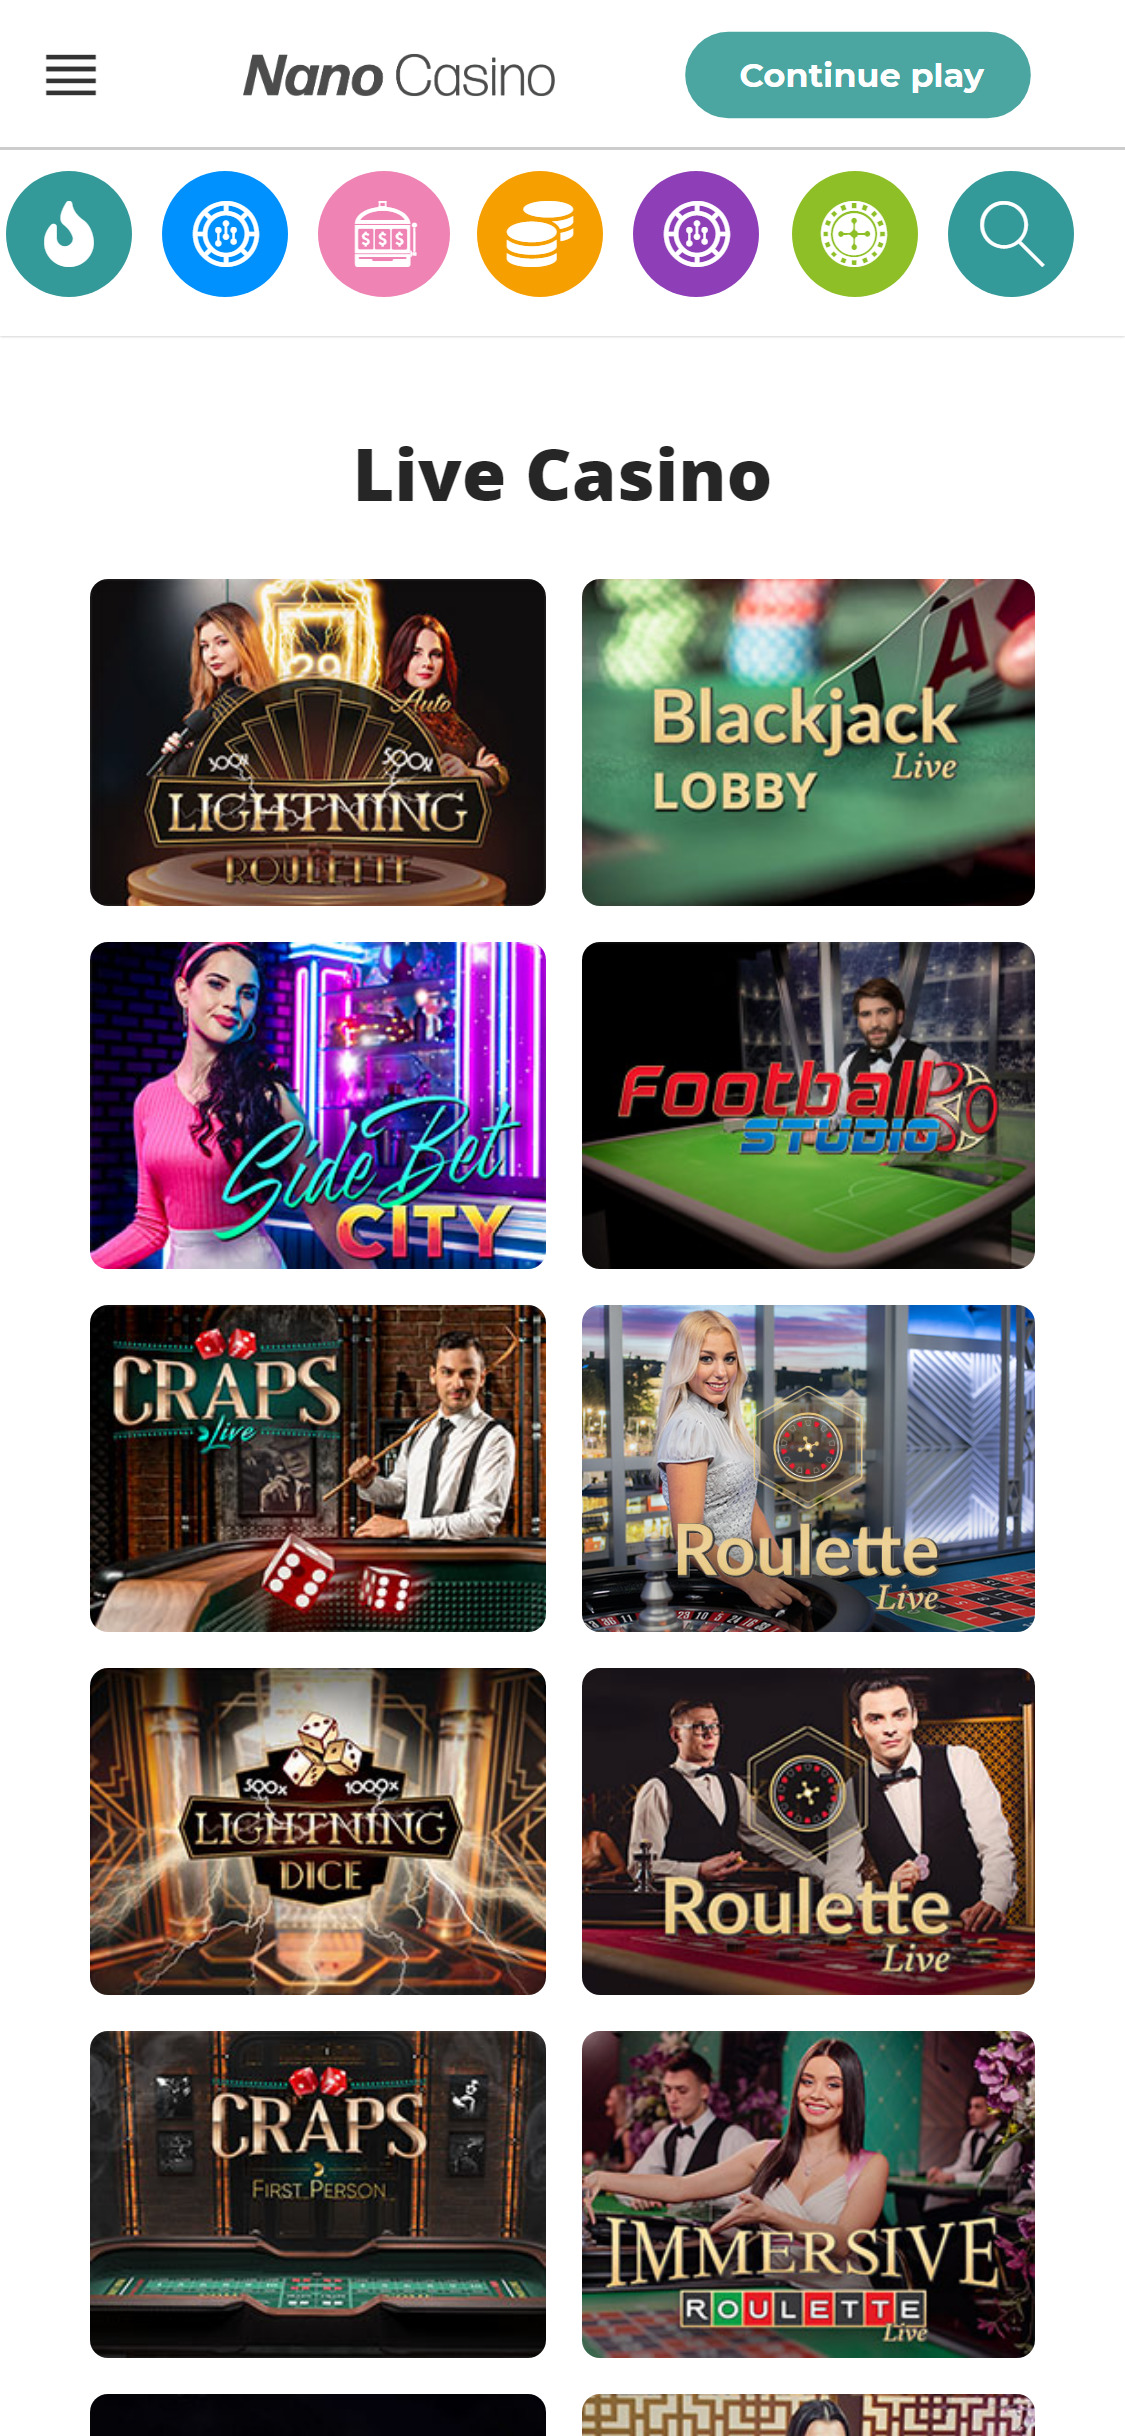 Nano Casino Mobile Live Dealer Games Review